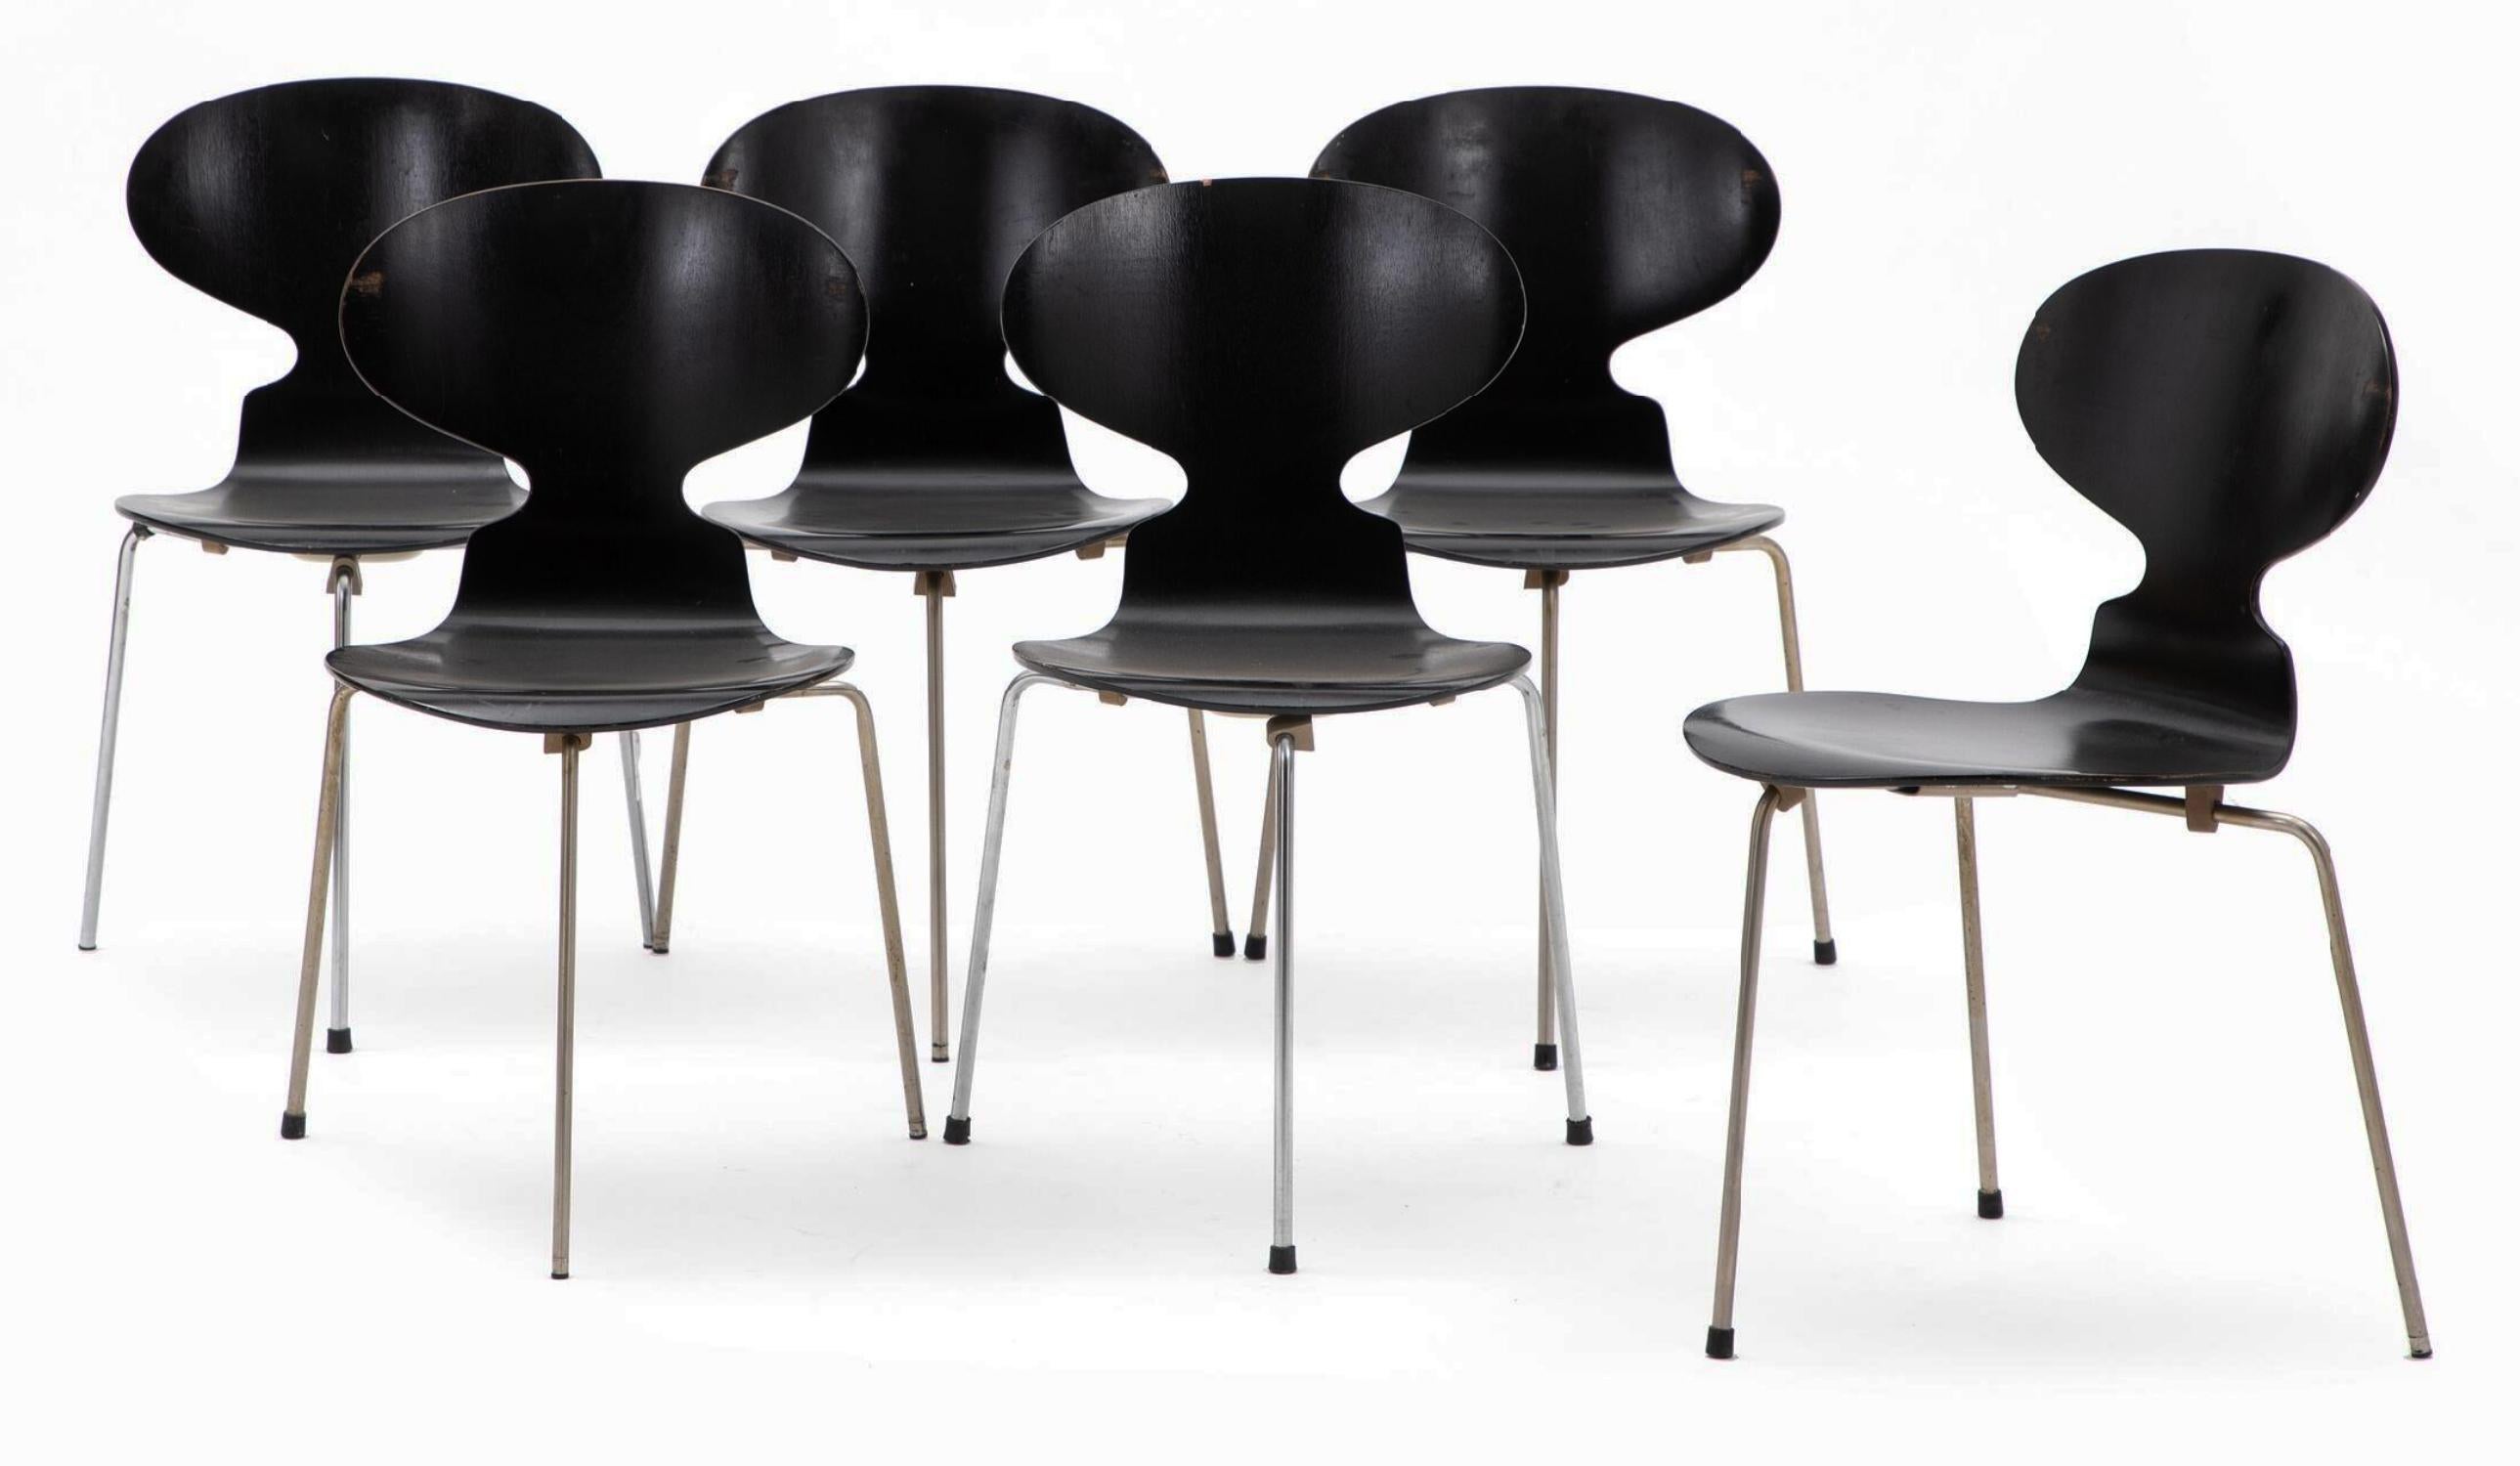 Ensemble de six chaises fourmis desingen en 1952 au Danemark par Arne Jacobsen Mod. 3100 pour Fritz Hansen. Assise et dossier en contreplaqué peint sur une structure en acier. En bon état avec quelques signes d'utilisation, petites abrasions. Signé